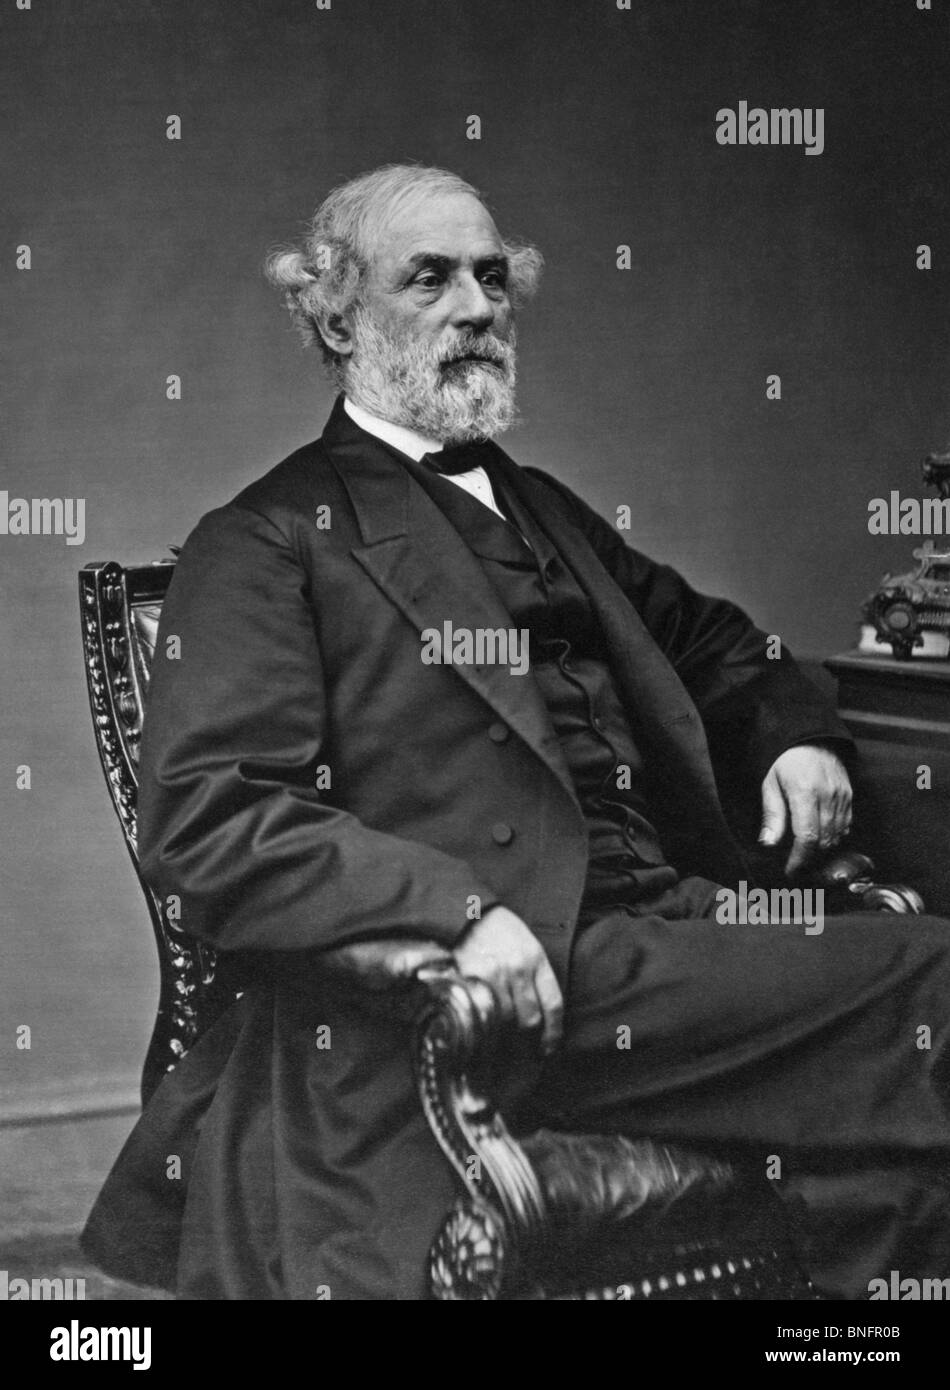 Foto retrato alrededor de finales de 1860 del general Robert E Lee (1807 - 1870) - iconic comandante confederado en la Guerra Civil Americana. Foto de stock